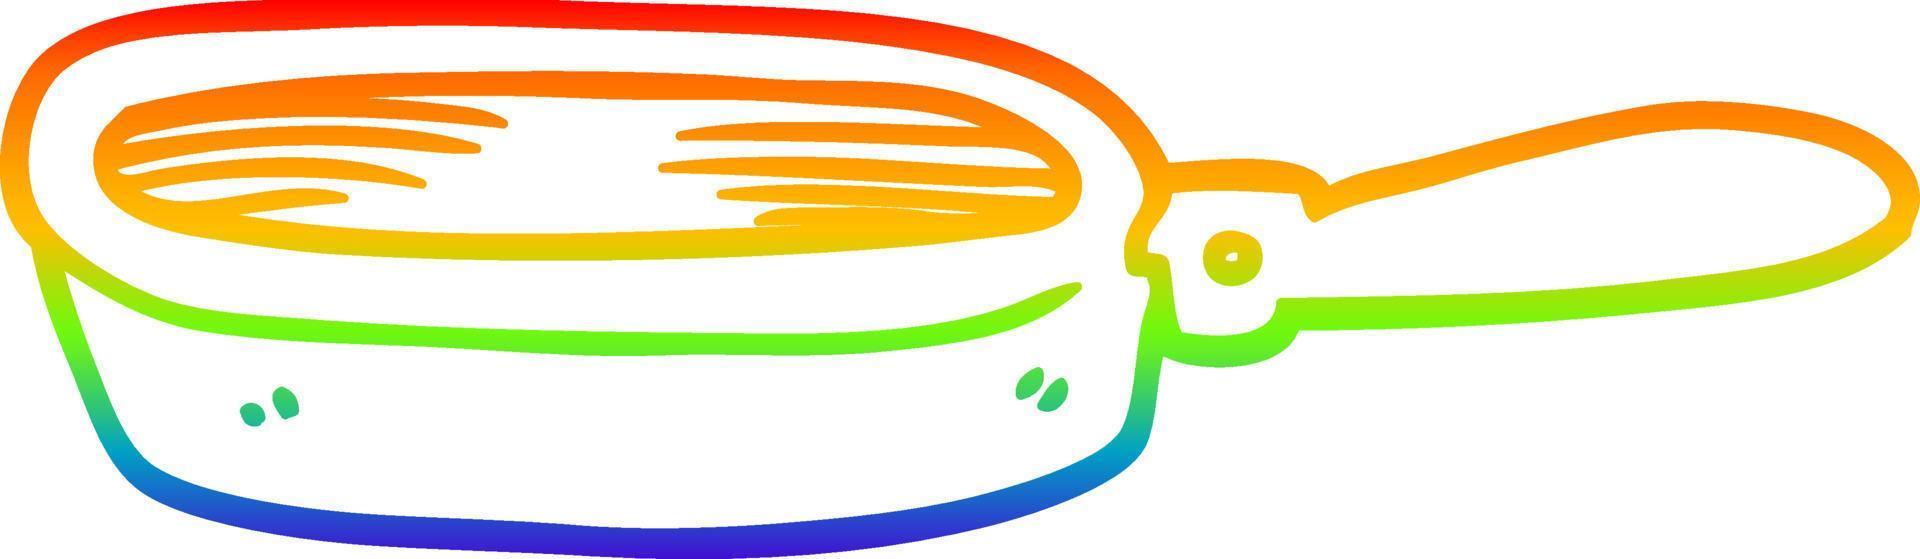 arcobaleno pendenza linea disegno cartone animato frittura padella vettore